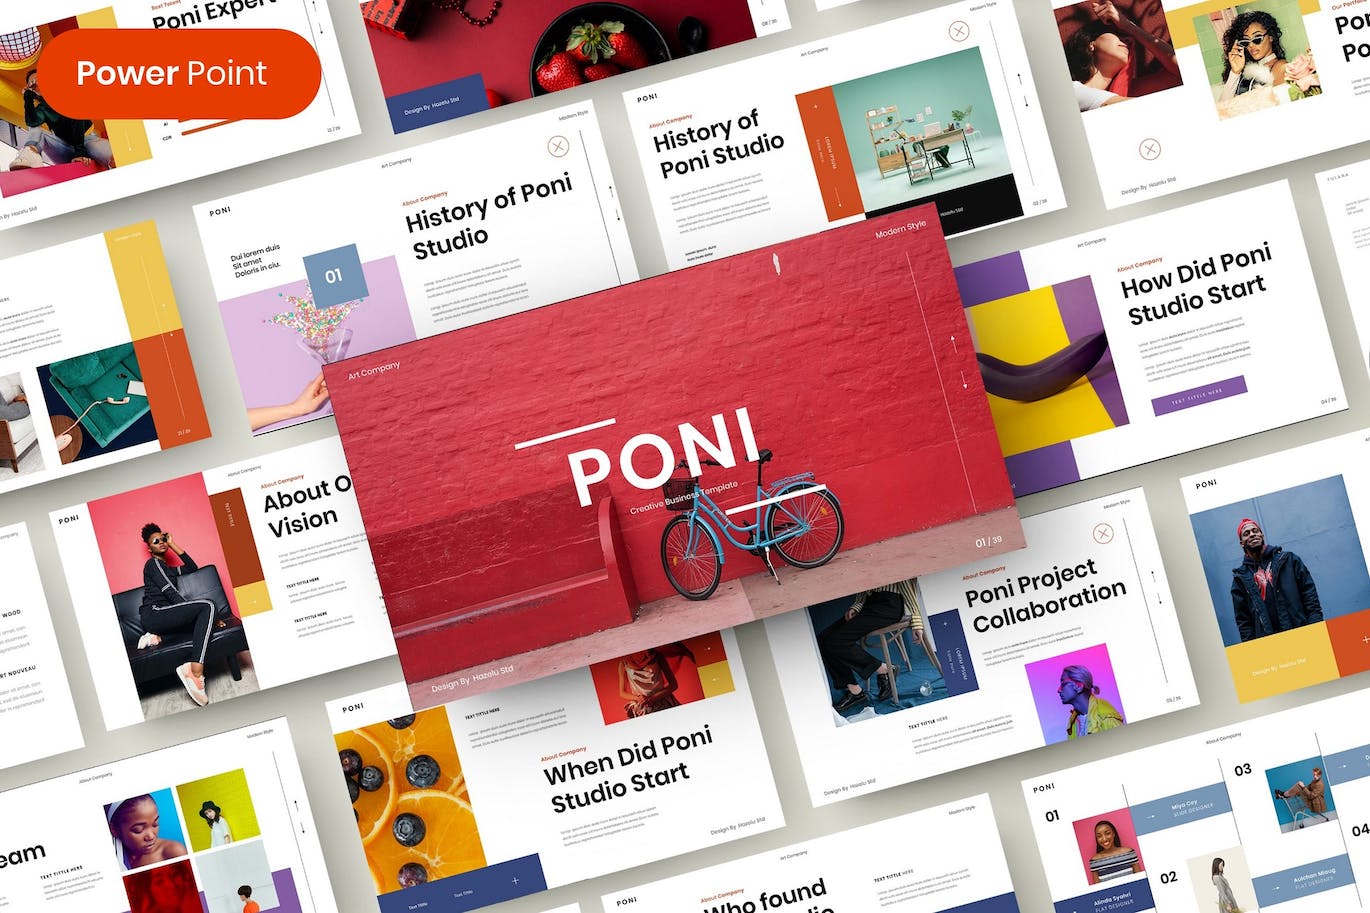 社交媒体商业发展PPT模板下载 Poni – Business PowerPoint Template